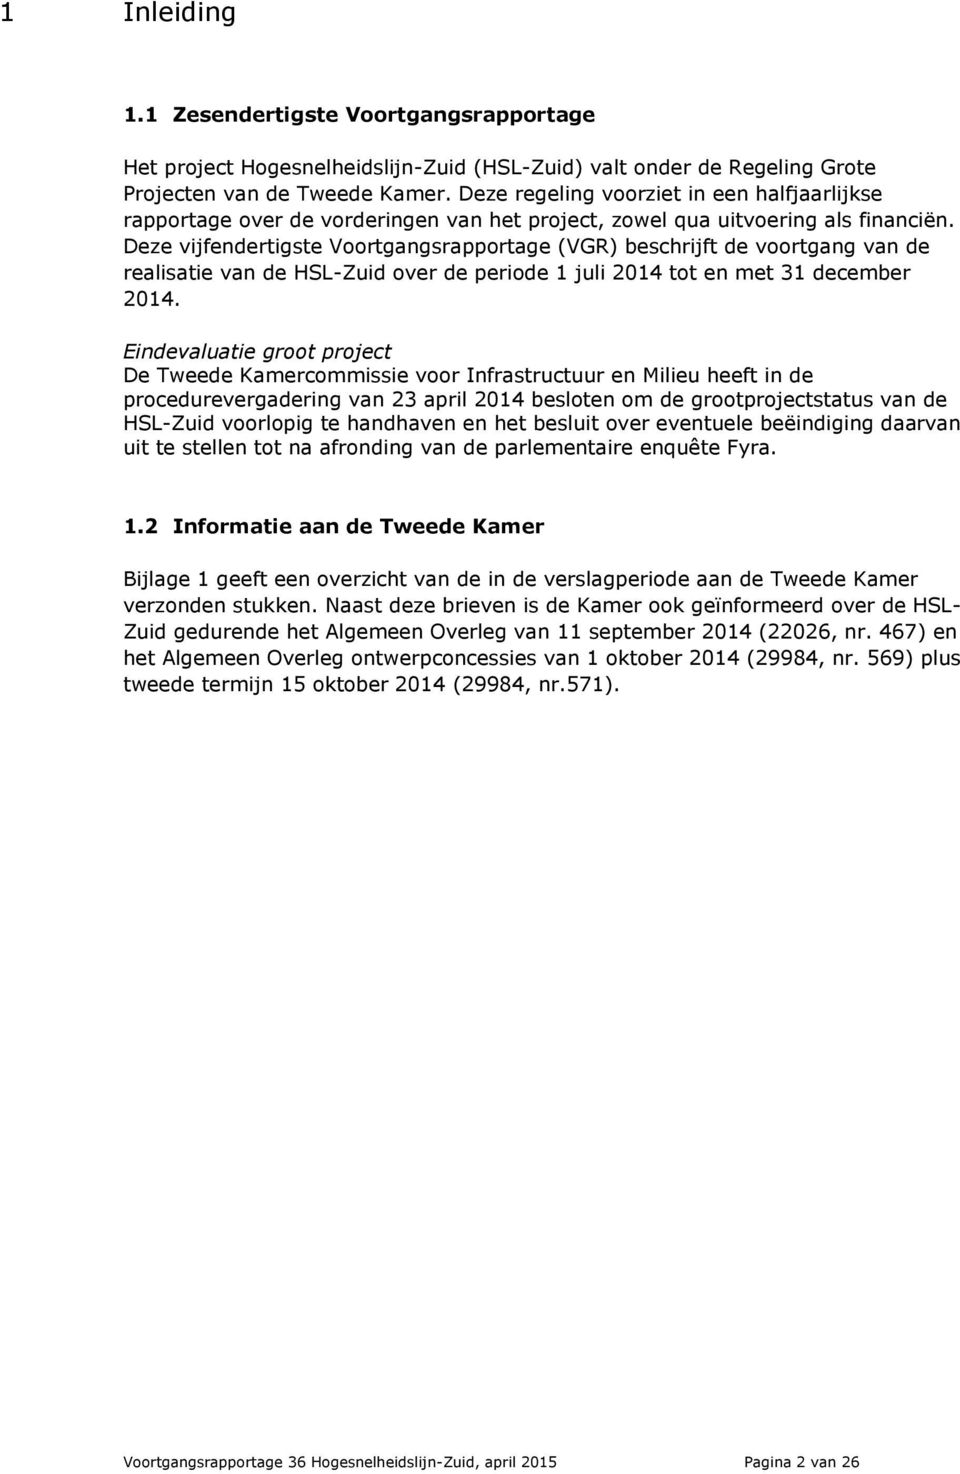 Deze vijfendertigste Voortgangsrapportage (VGR) beschrijft de voortgang van de realisatie van de HSL-Zuid over de periode 1 juli 2014 tot en met 31 december 2014.